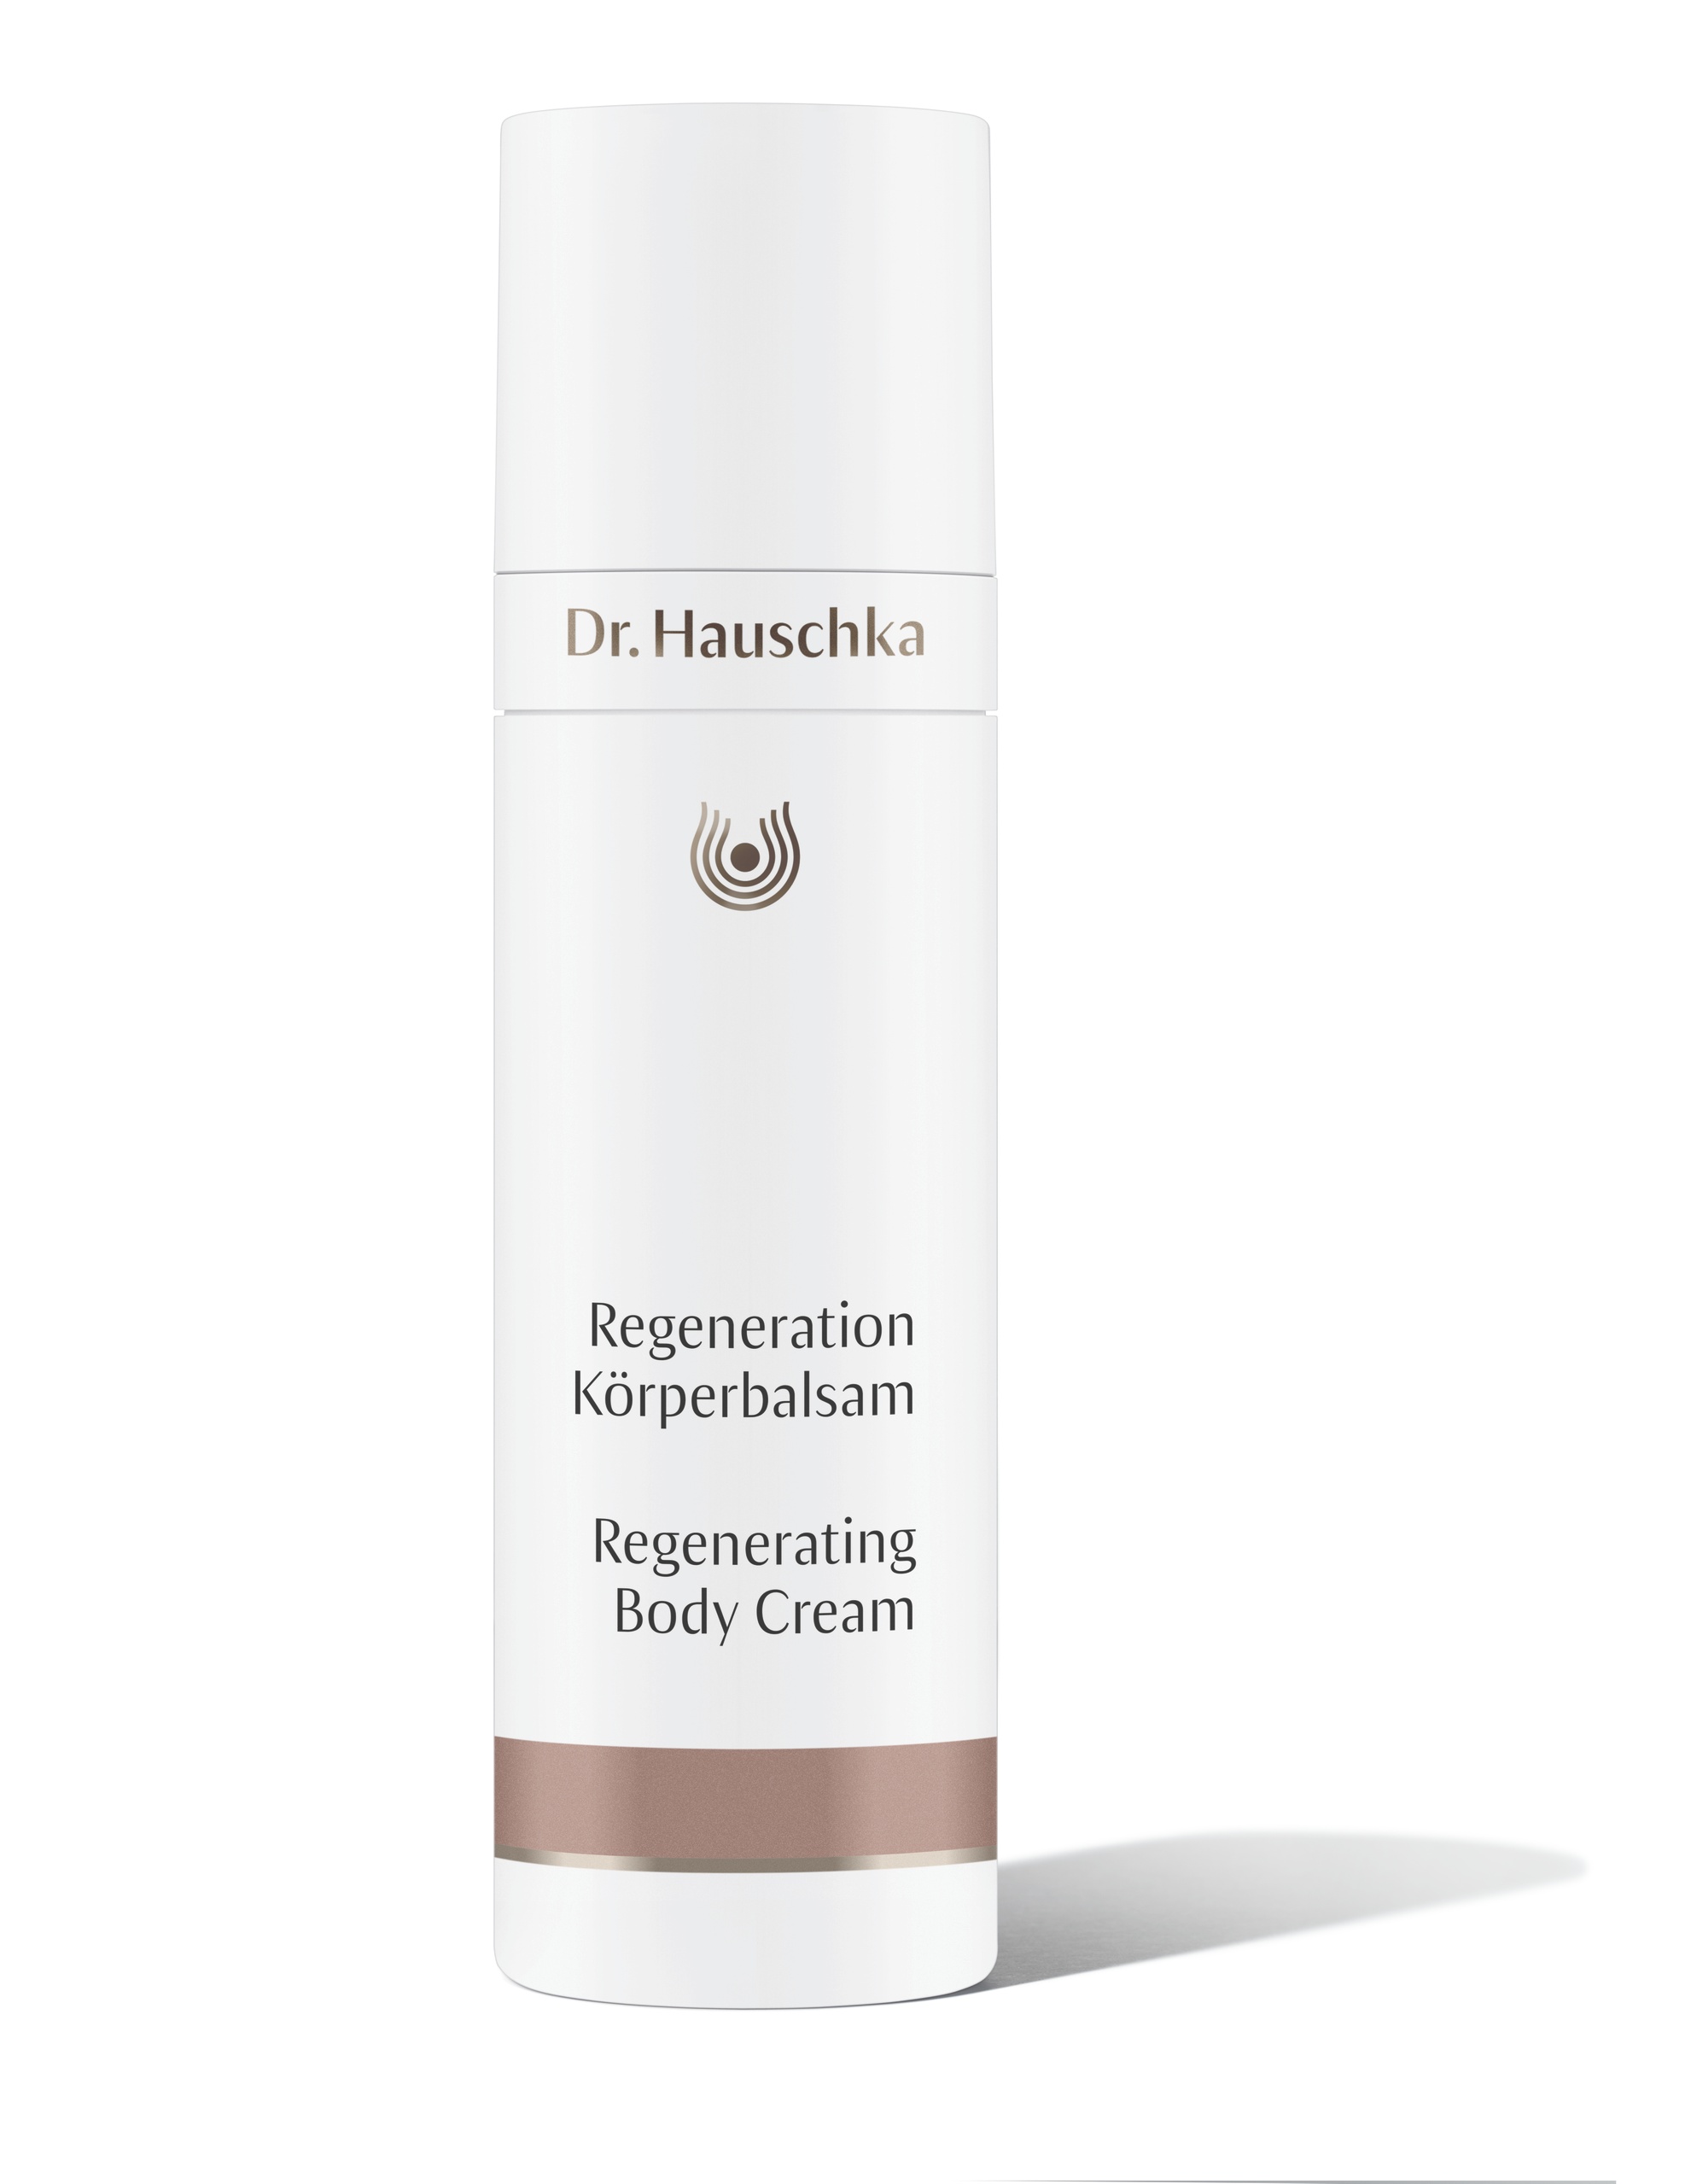 Dr. Hauschka Regeneration Körperbalsam 150ml